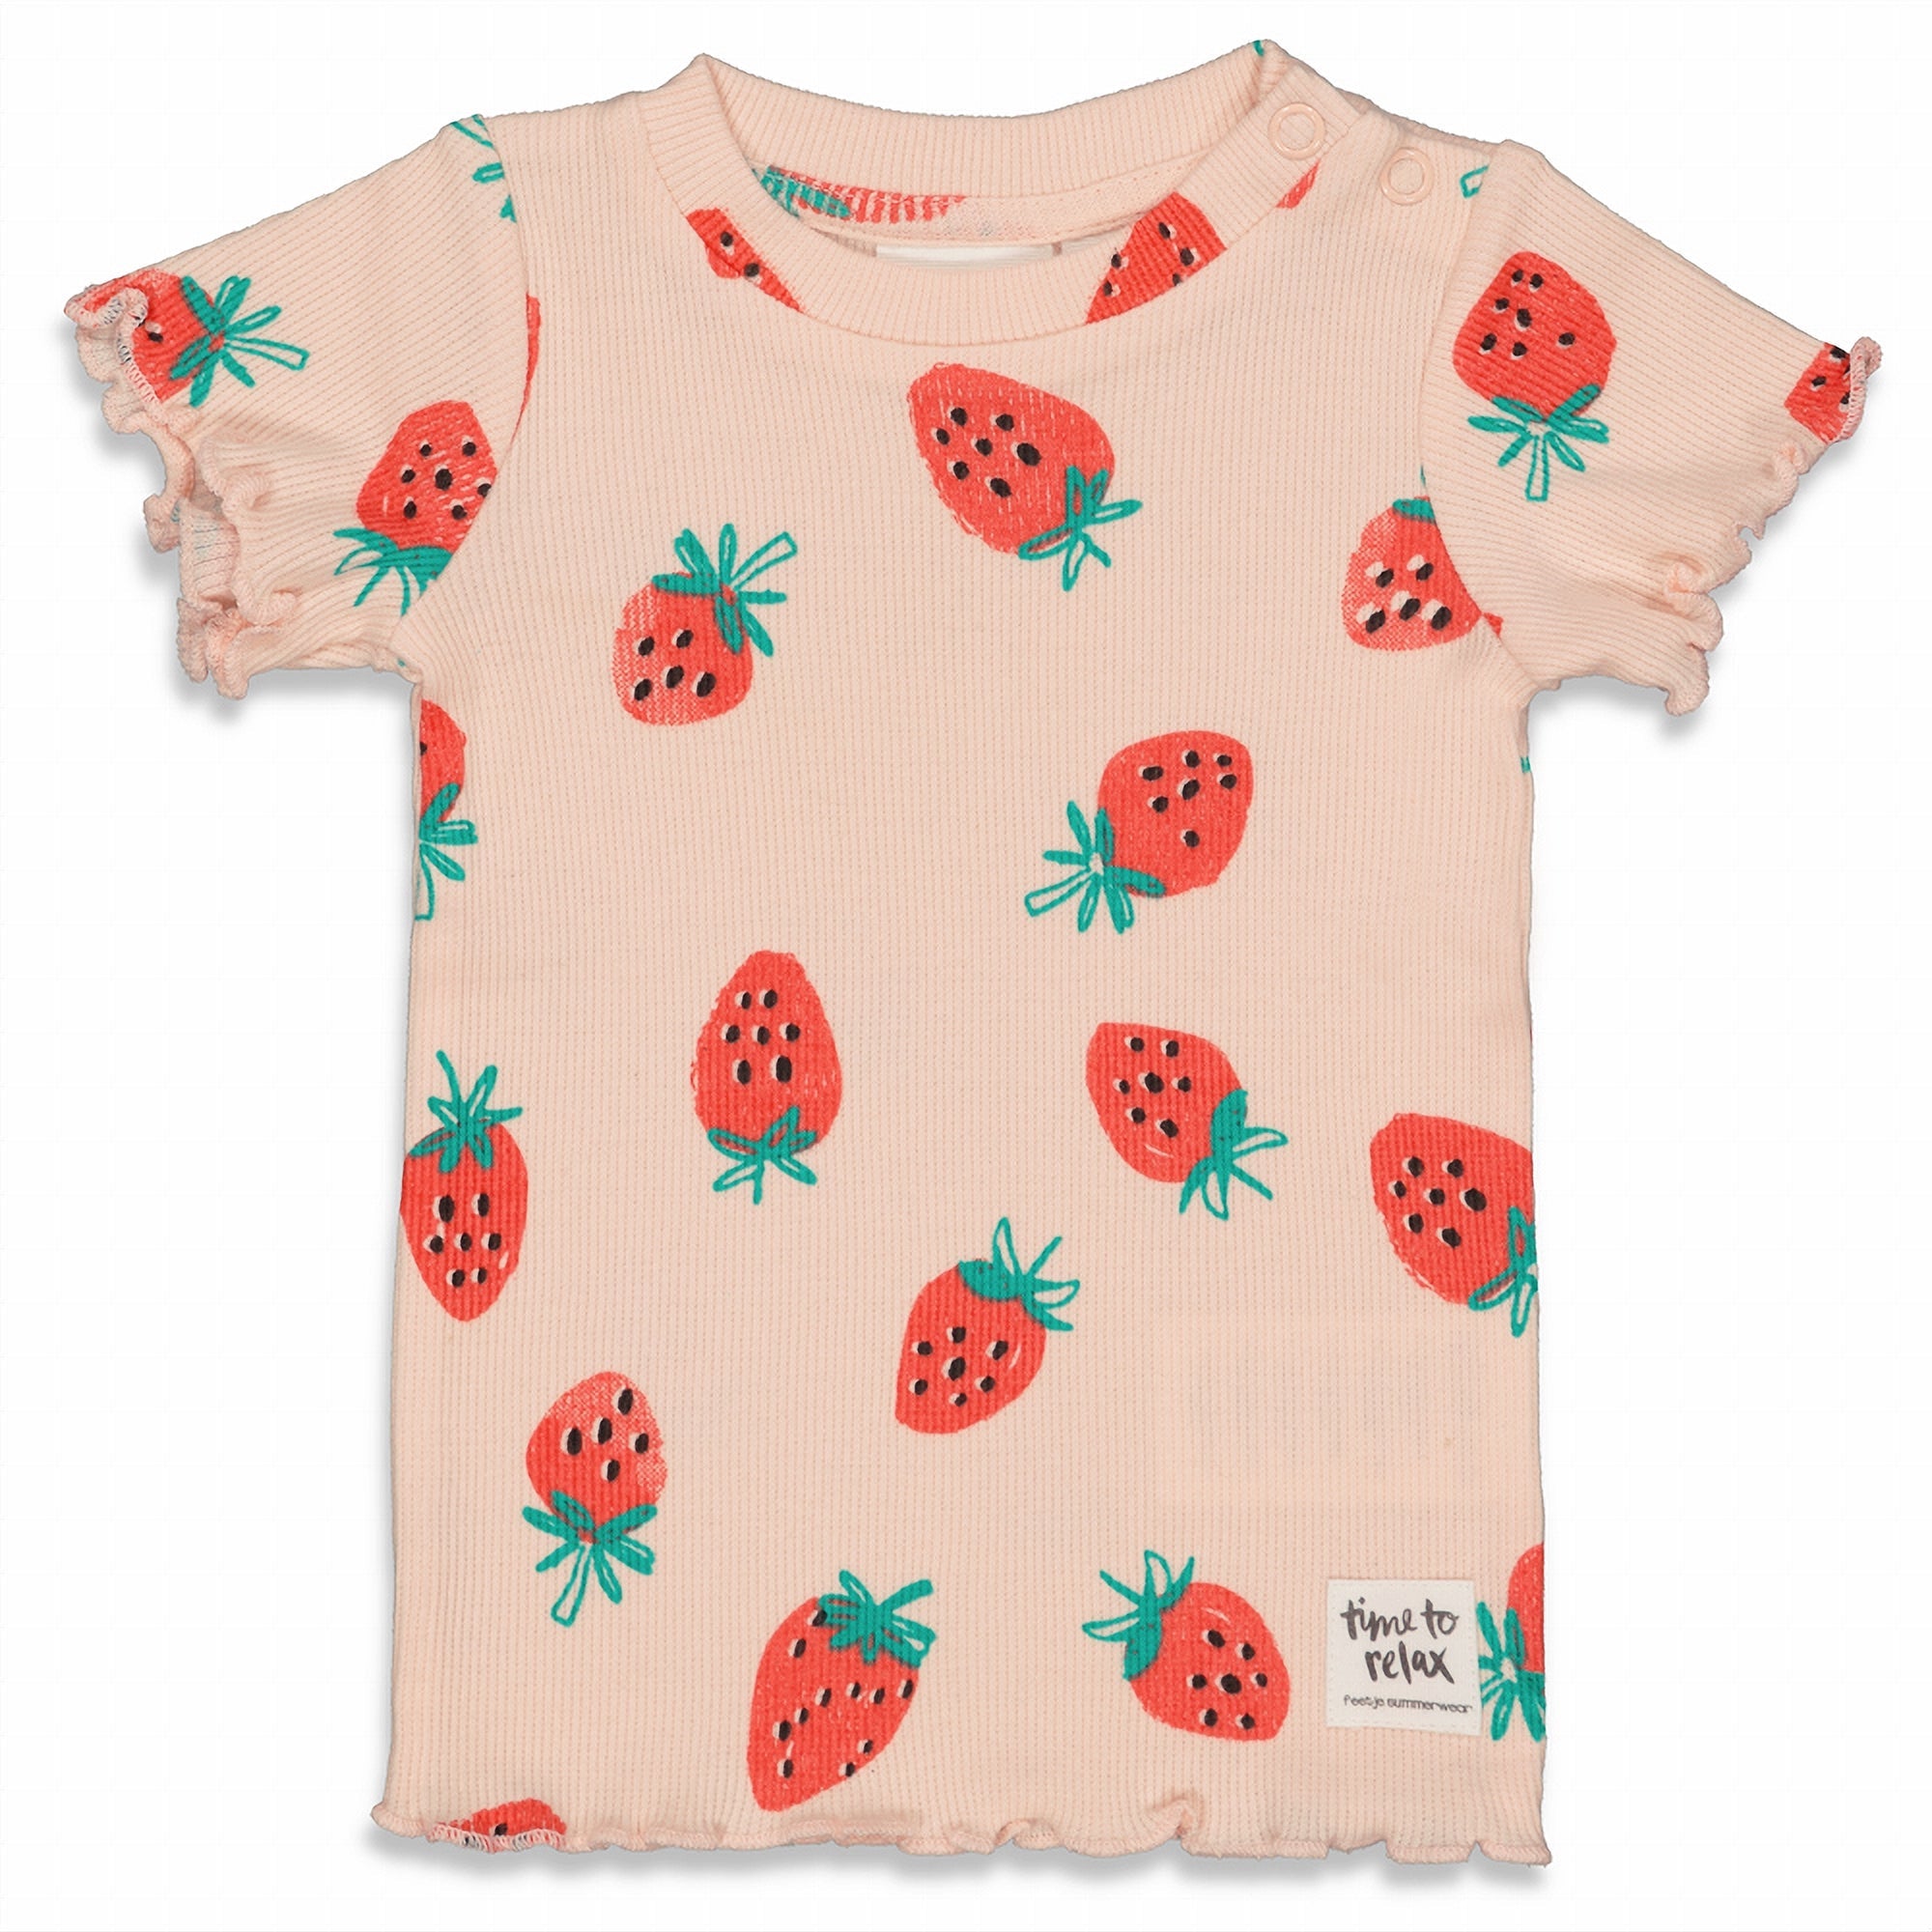 Meisjes Suzy Strawberry - Premium Summerwear by FEETJE van Feetje in de kleur Roze in maat 128.